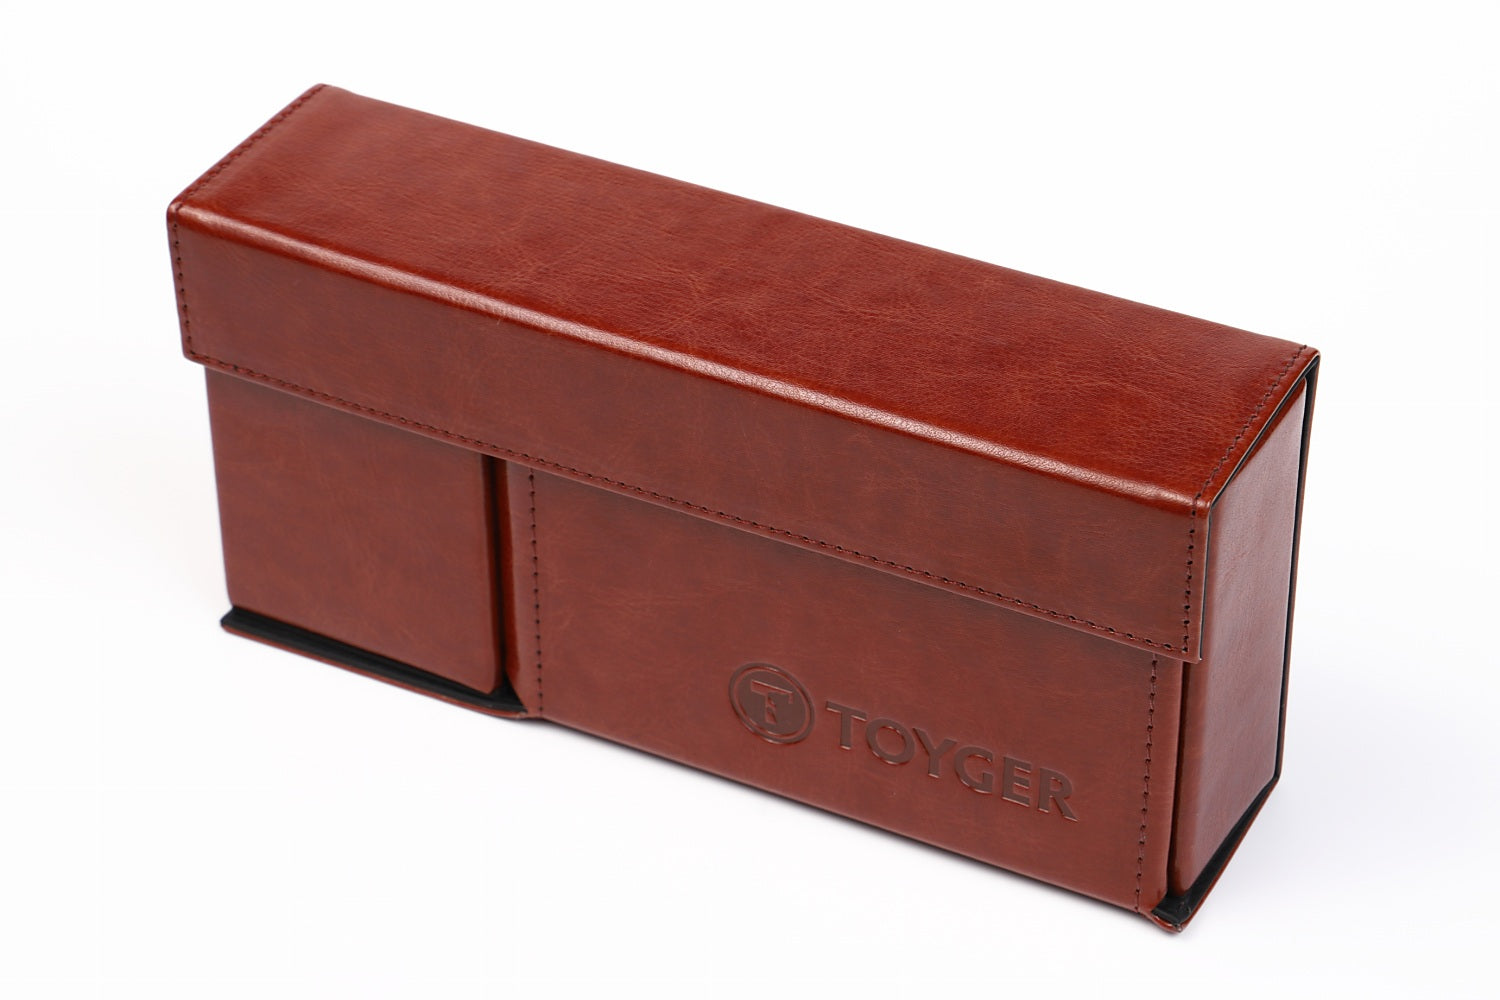 Deck Boxes / Cases